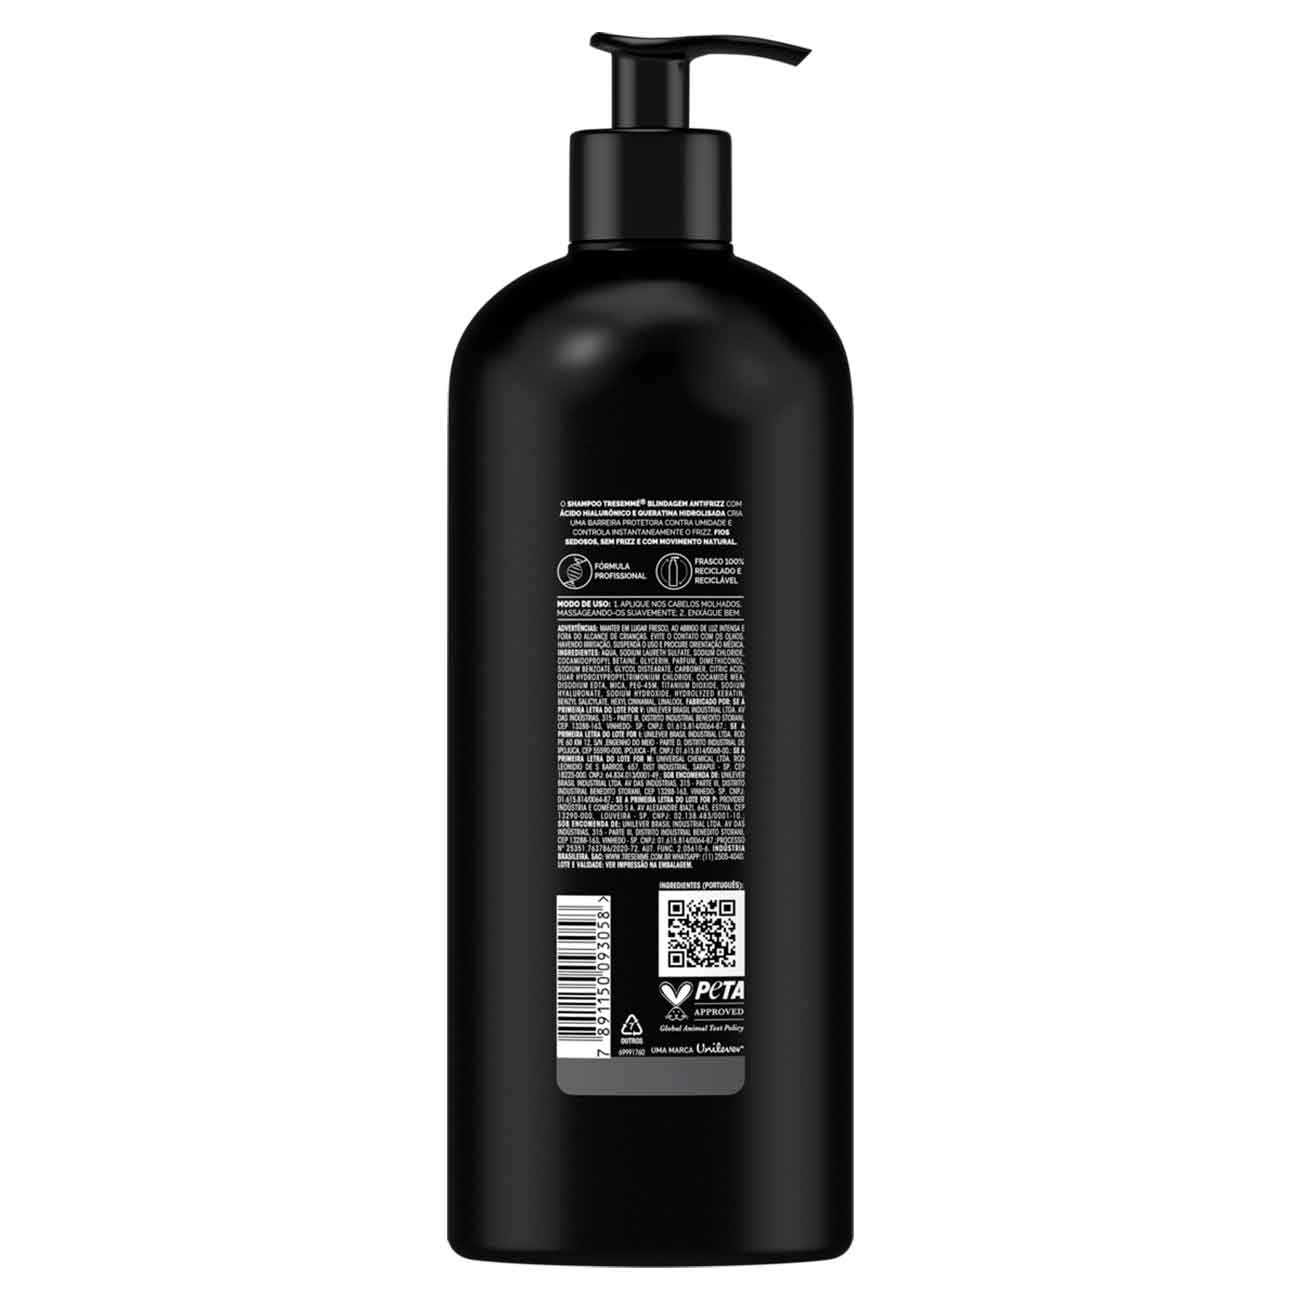 Shampoo Tresemm Blindagem Antifrizz 650mL